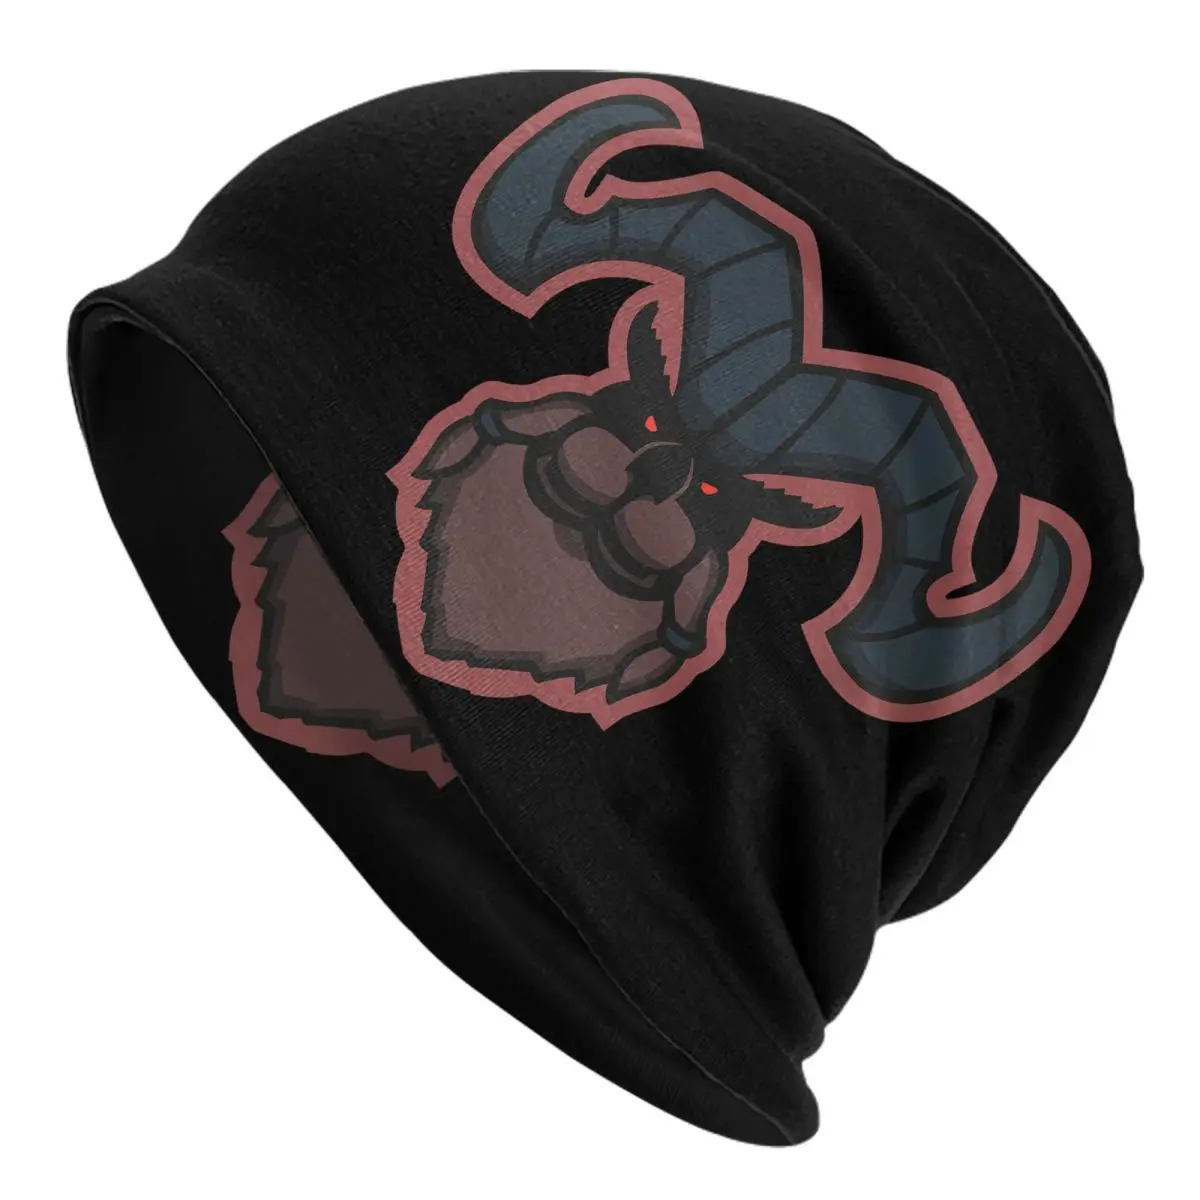 Ornn League Of Legends LOL MOBA Games Caps Men Women Unisex Streetwear Winter Warm Knit Hat Adult funny Hats